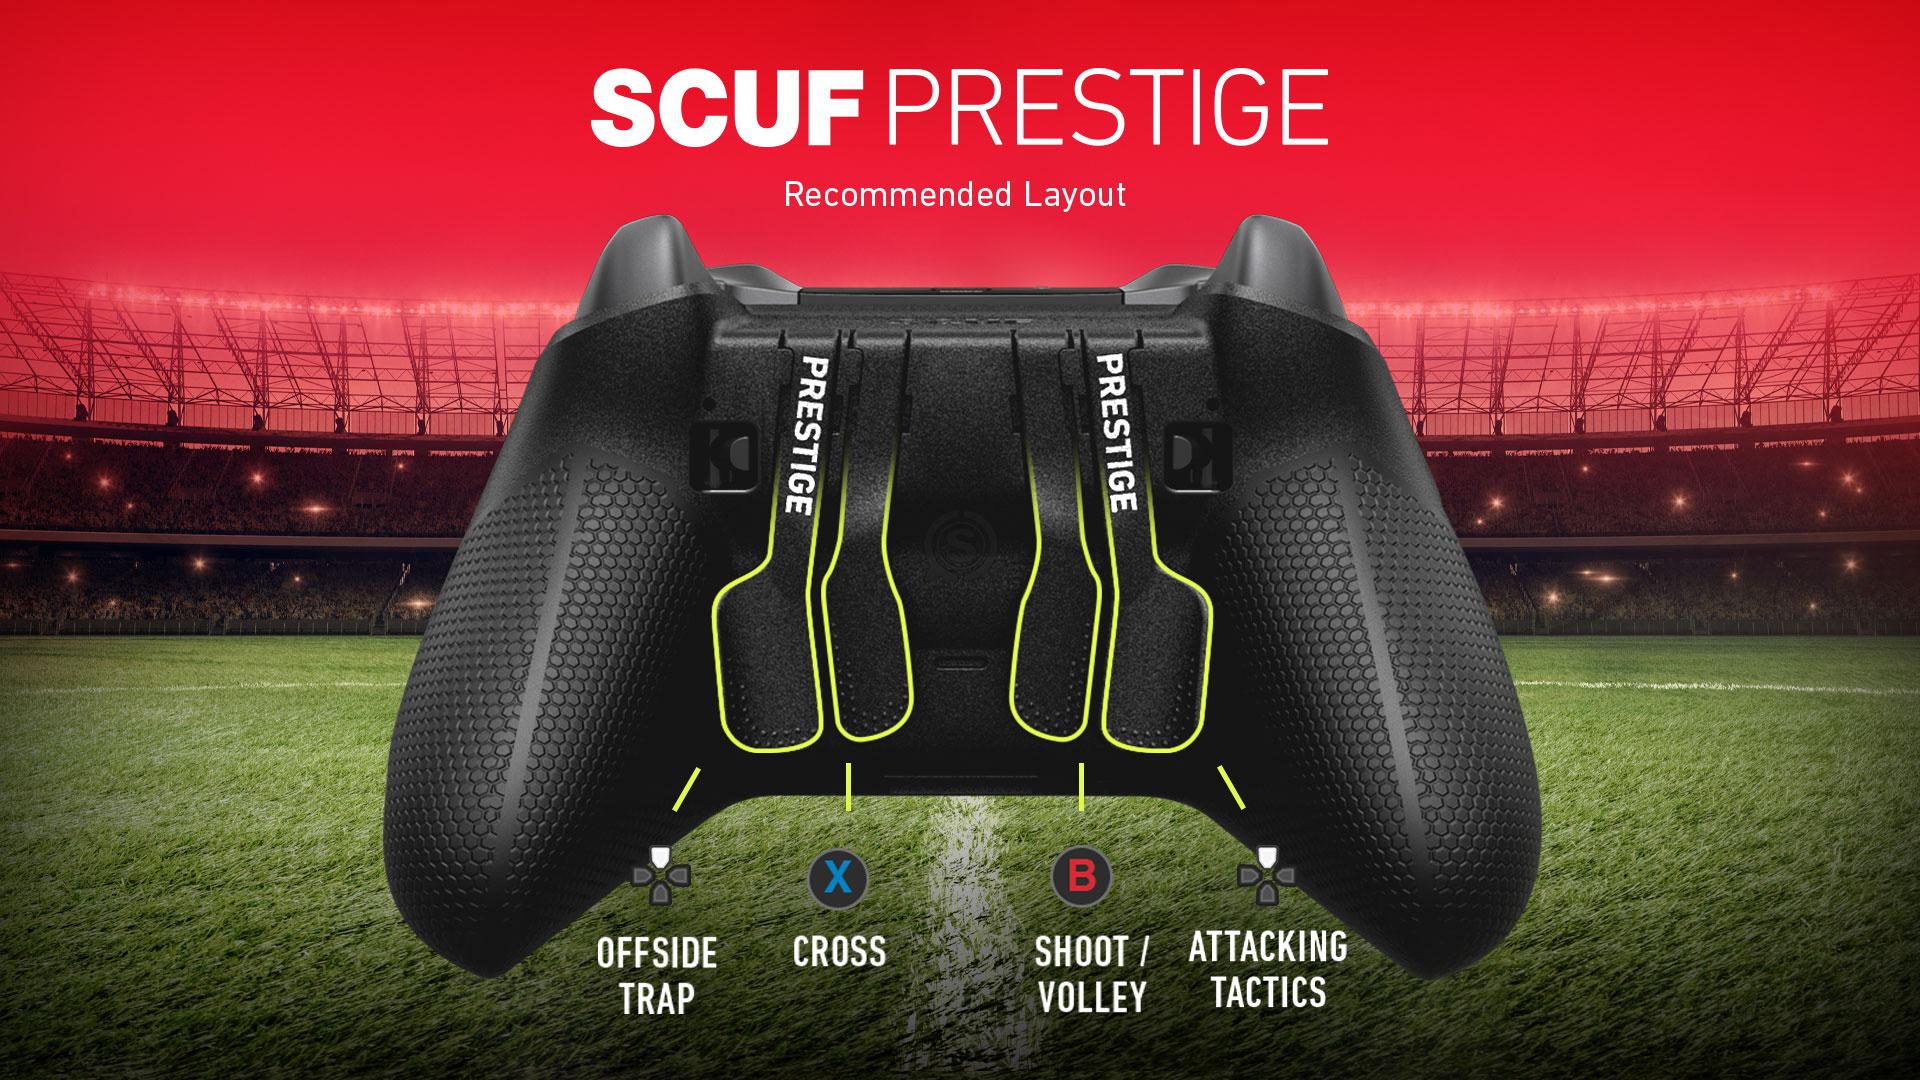 SCUF Prestige FIFA 20 Controller Configuration